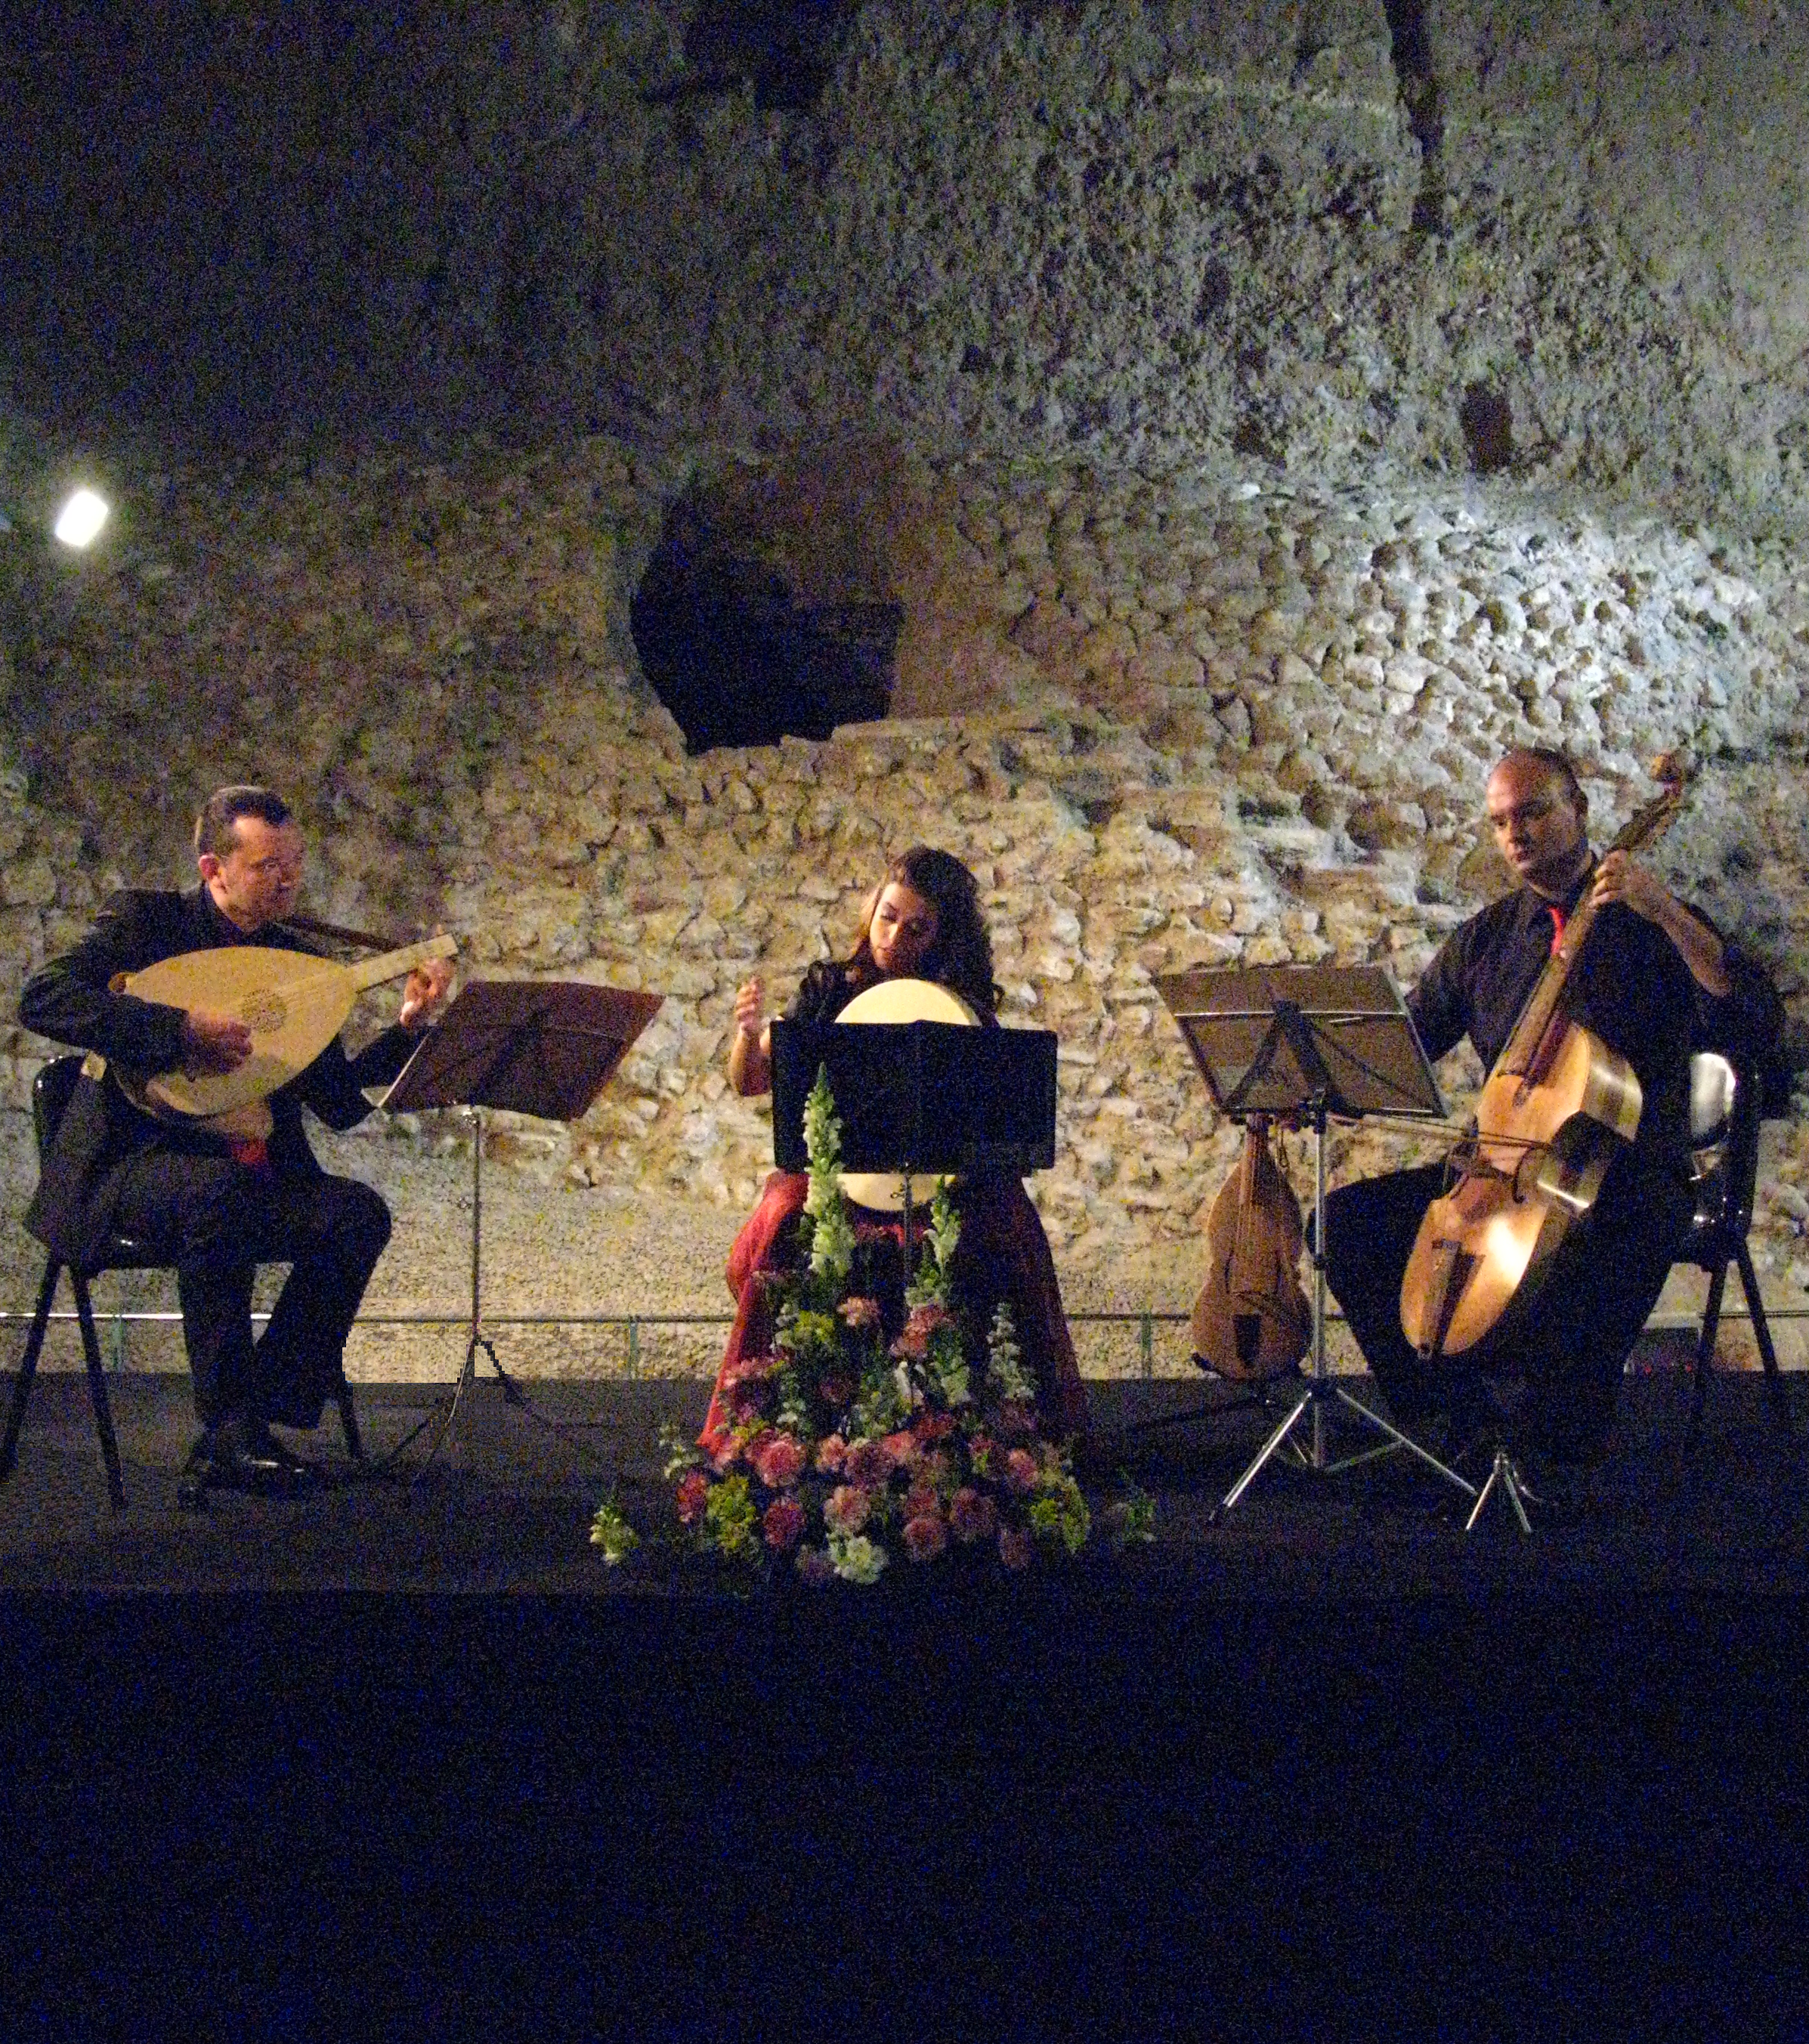 XVIII-festival-de-musica-en-el-museo-del-foro-romano